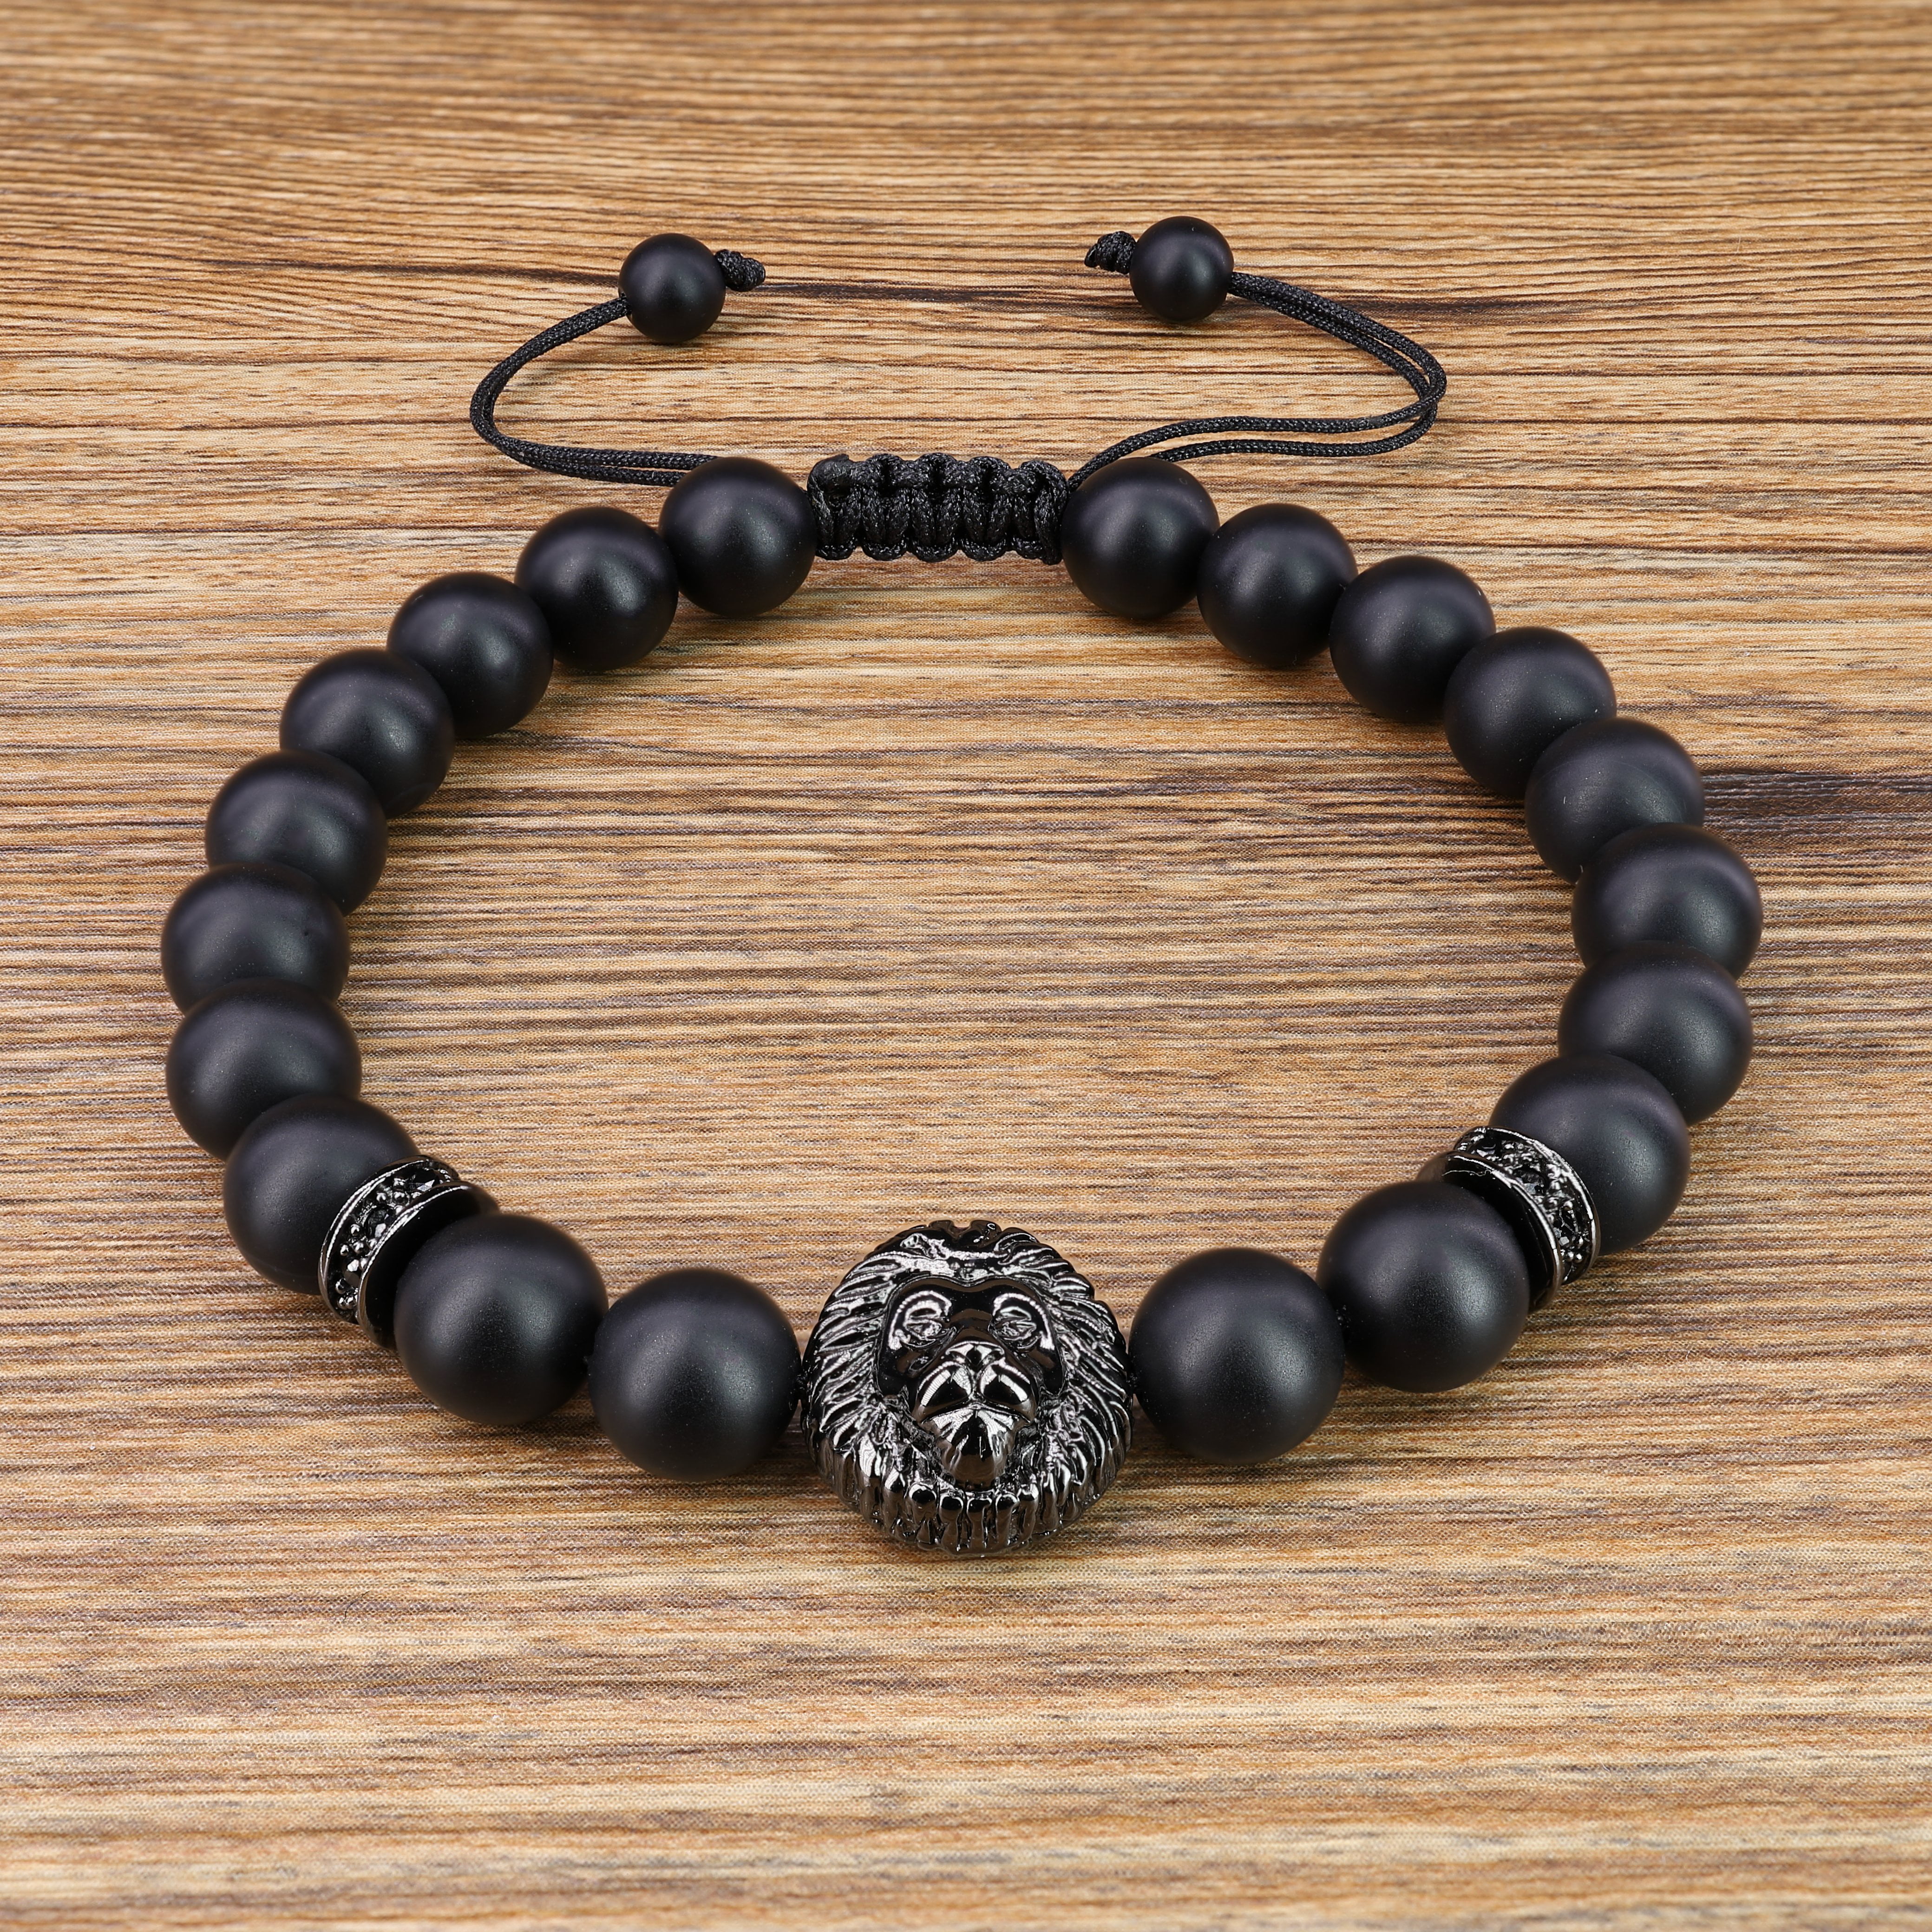 CASDAN 12pcs 8mm Lava Rock Stone Bead Bracelet for Men Women Dragon/Lion/Panther Leopard Head Bracelet Charm Bracelets Set Adjustable